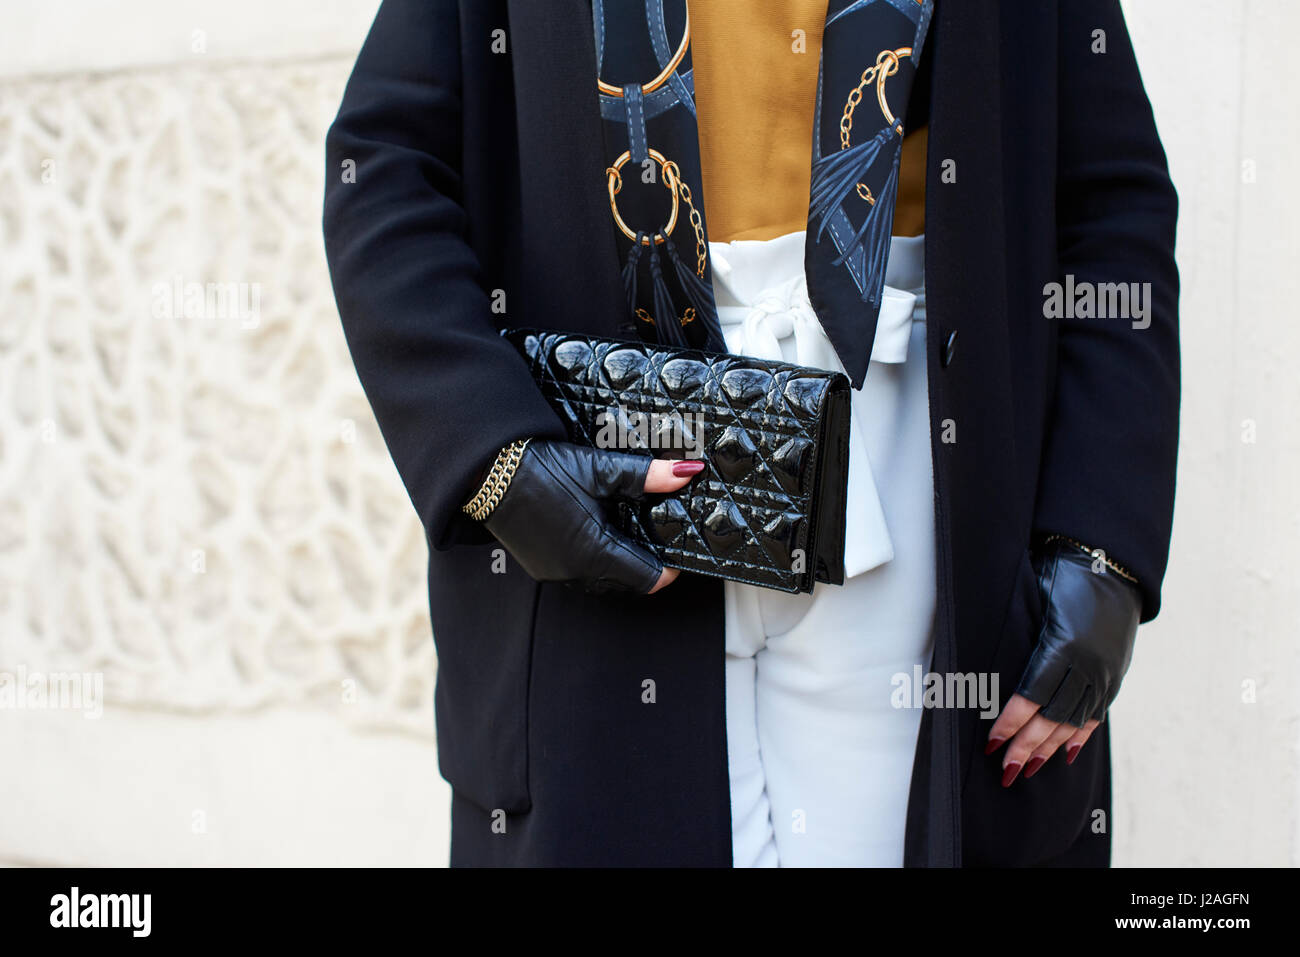 Londra - febbraio, 2017: sezione centrale della donna in cappotto e guanti senza dita tenendo una frizione Chanel borsetta in strada durante la London Fashion Week, orizzontale, vista frontale Foto Stock